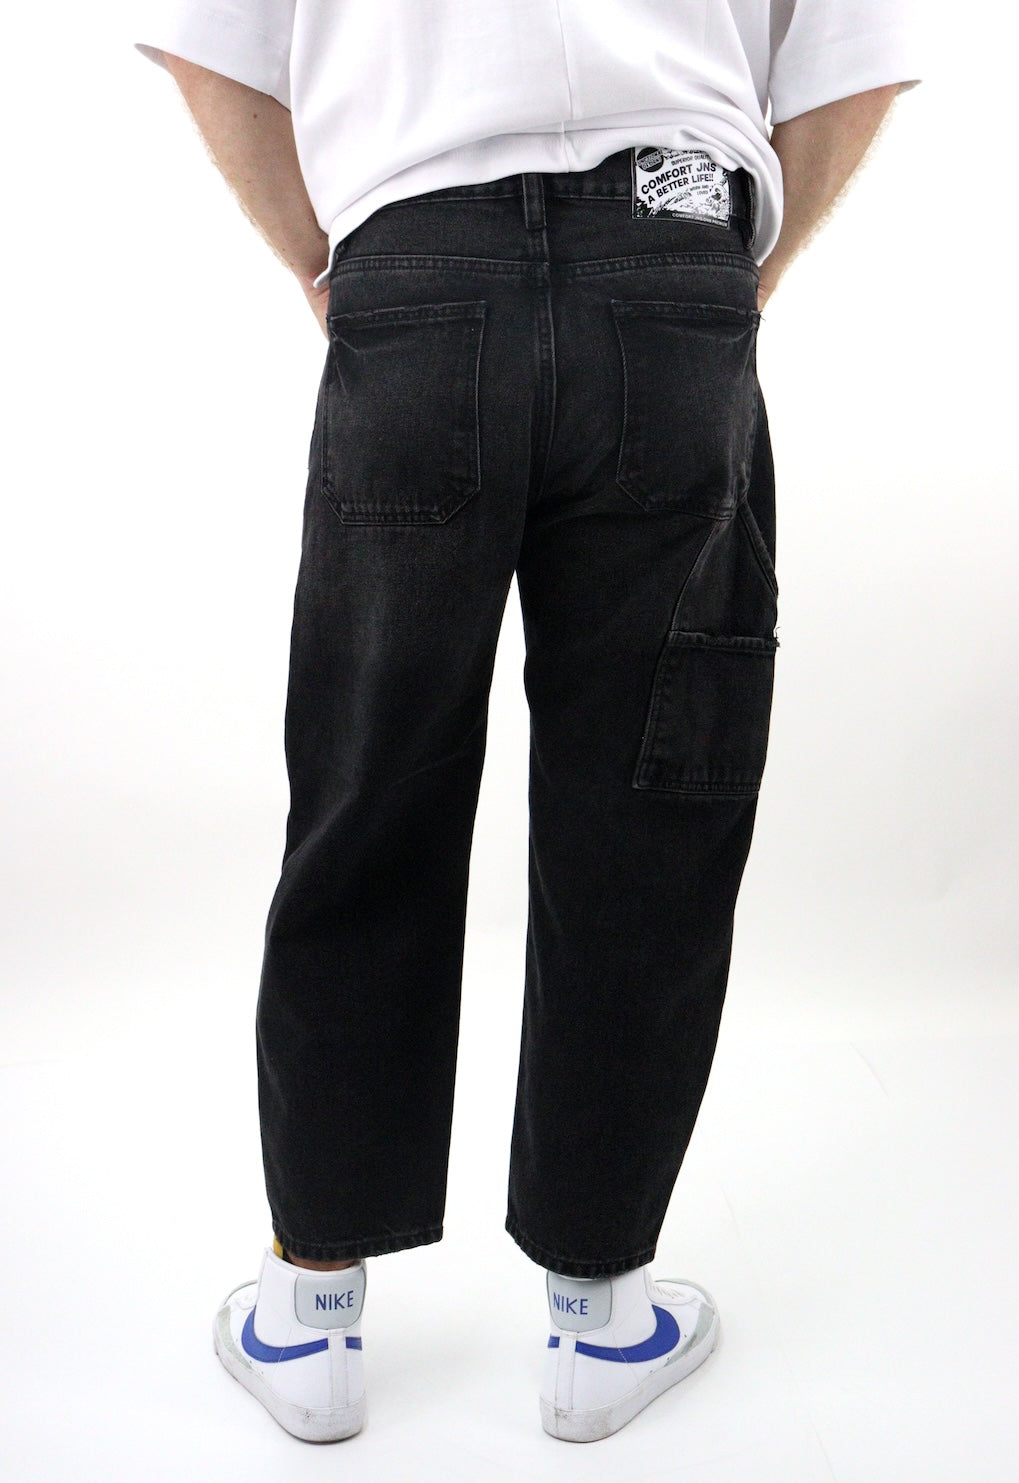 Jeans estilo loose de color negro deslavado (NUEVA TEMPORADA)